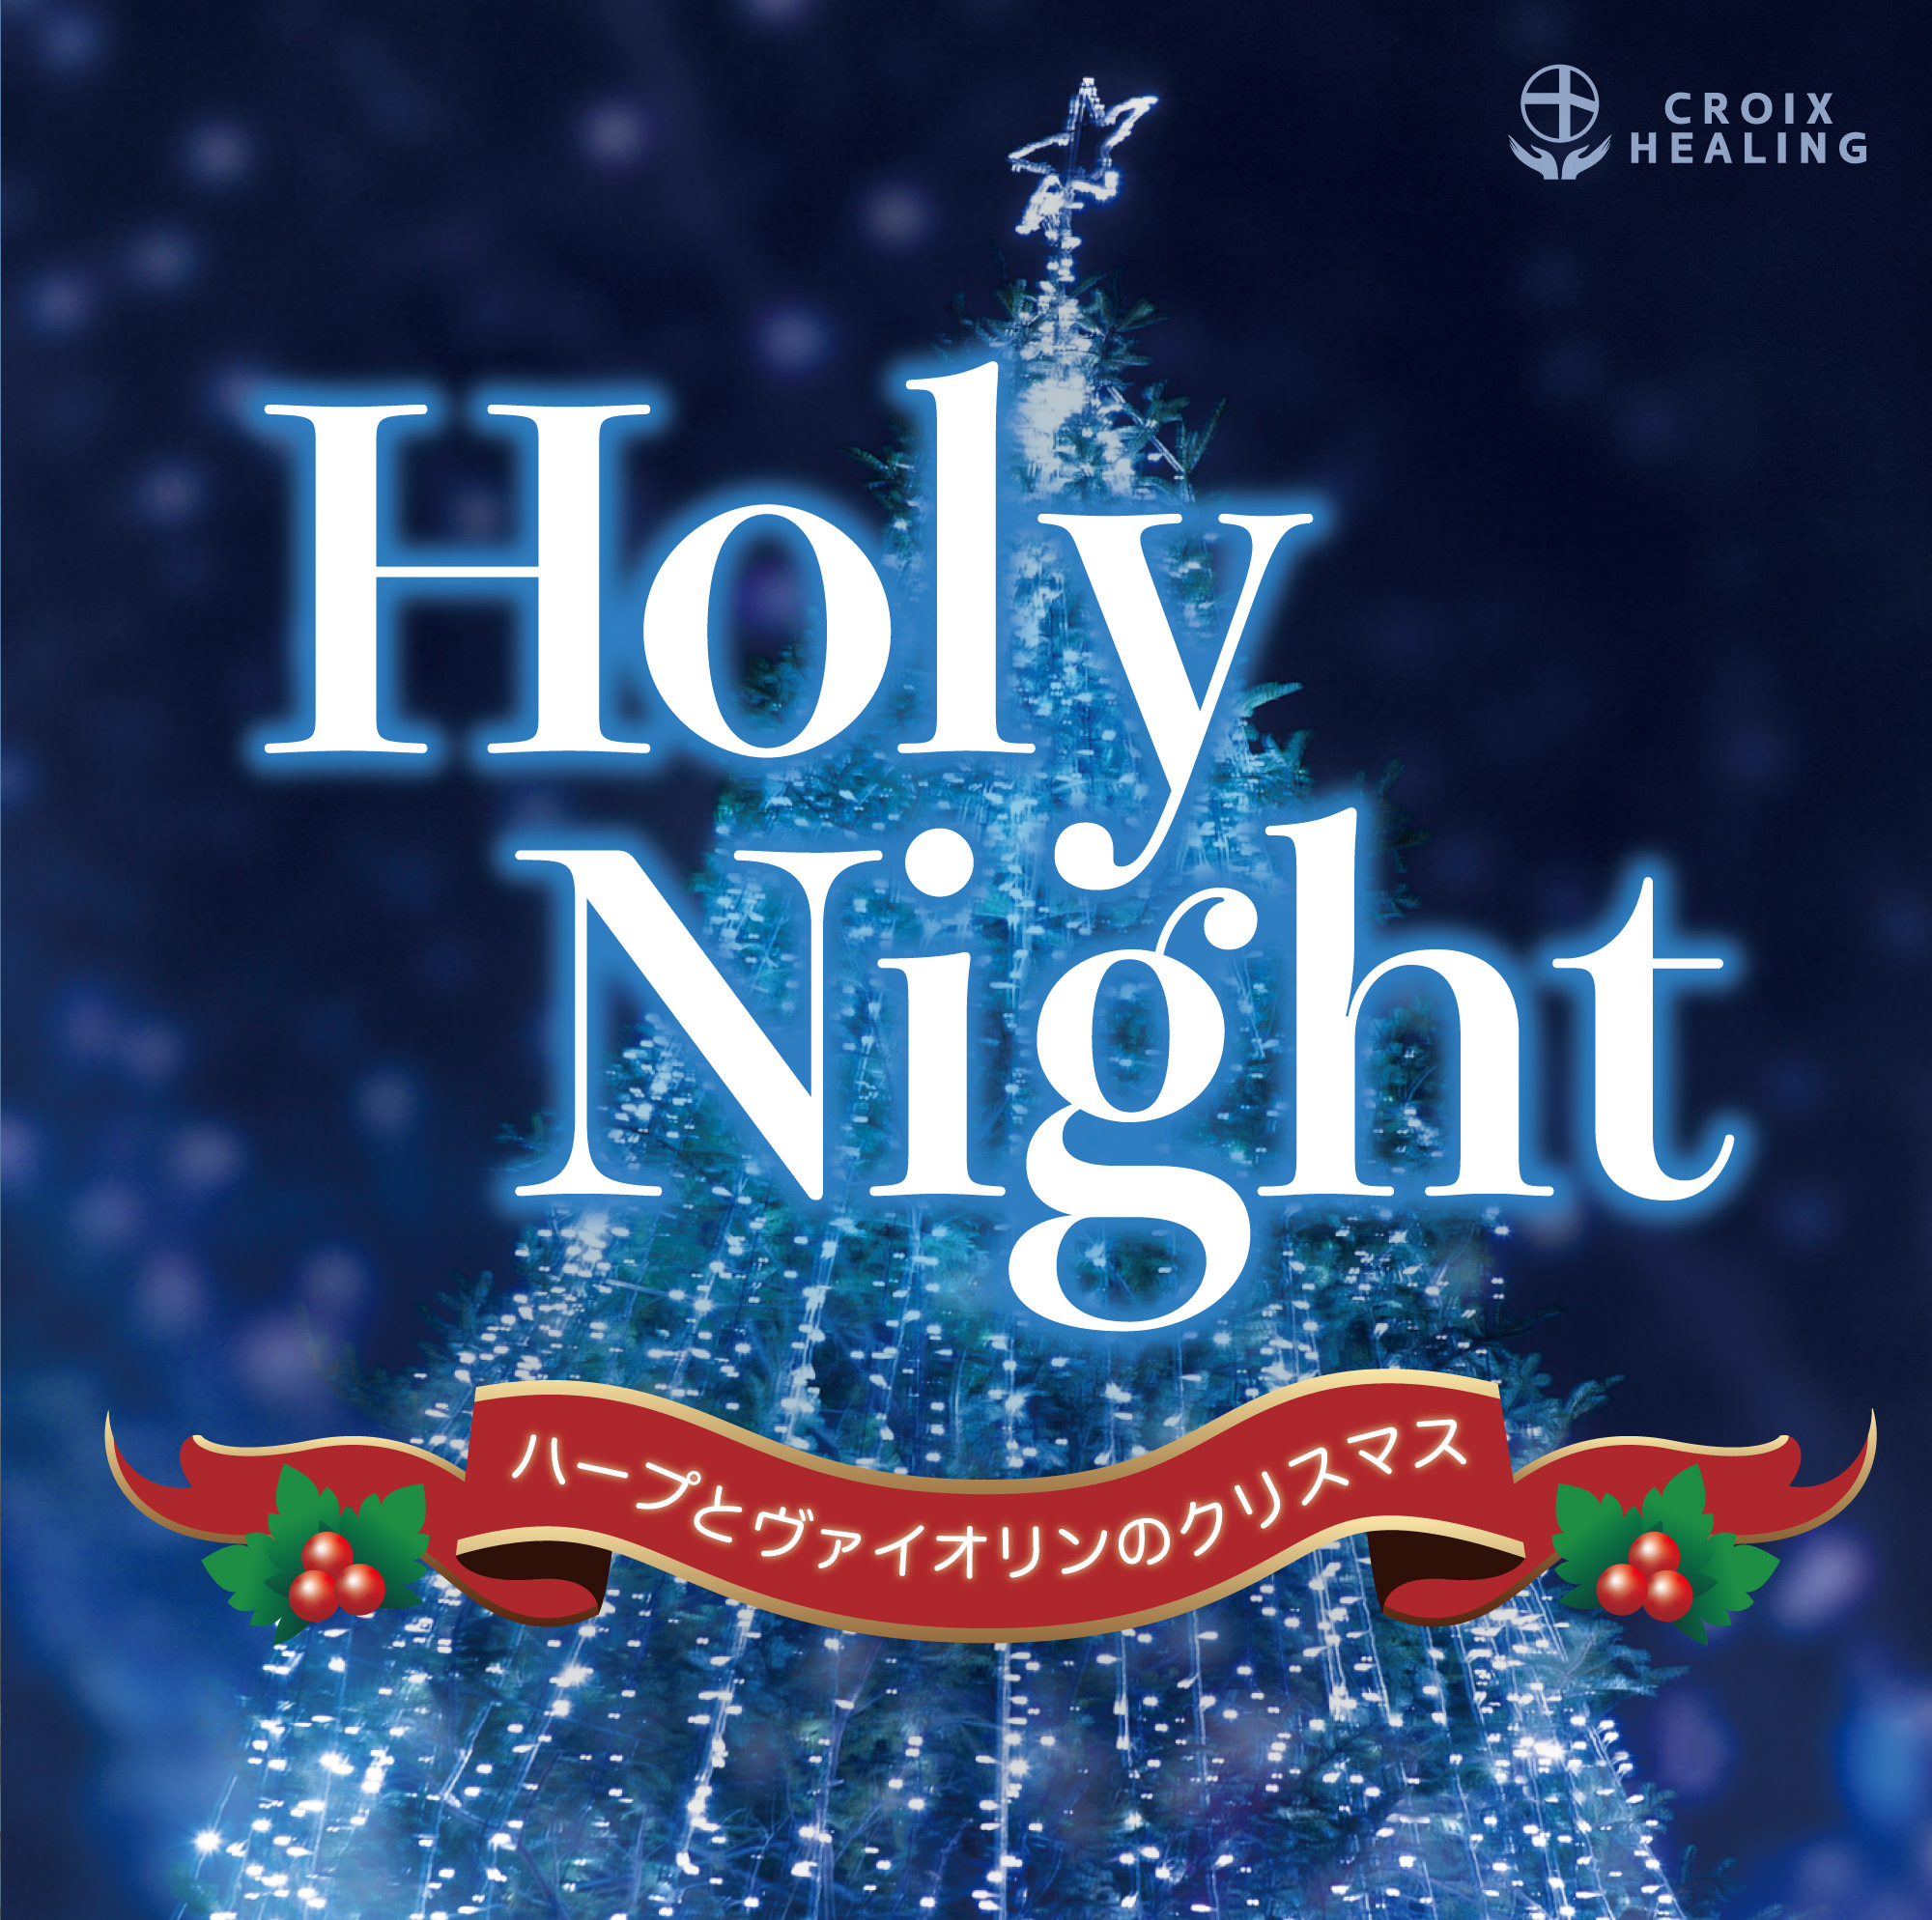 聖なる夜にお届けするハープとヴァイオリンによる癒しのクリスマス・アルバムが、ヒーリング大手の株式会社クロアが運営するレーベル「クロアヒーリング」より配信開始。